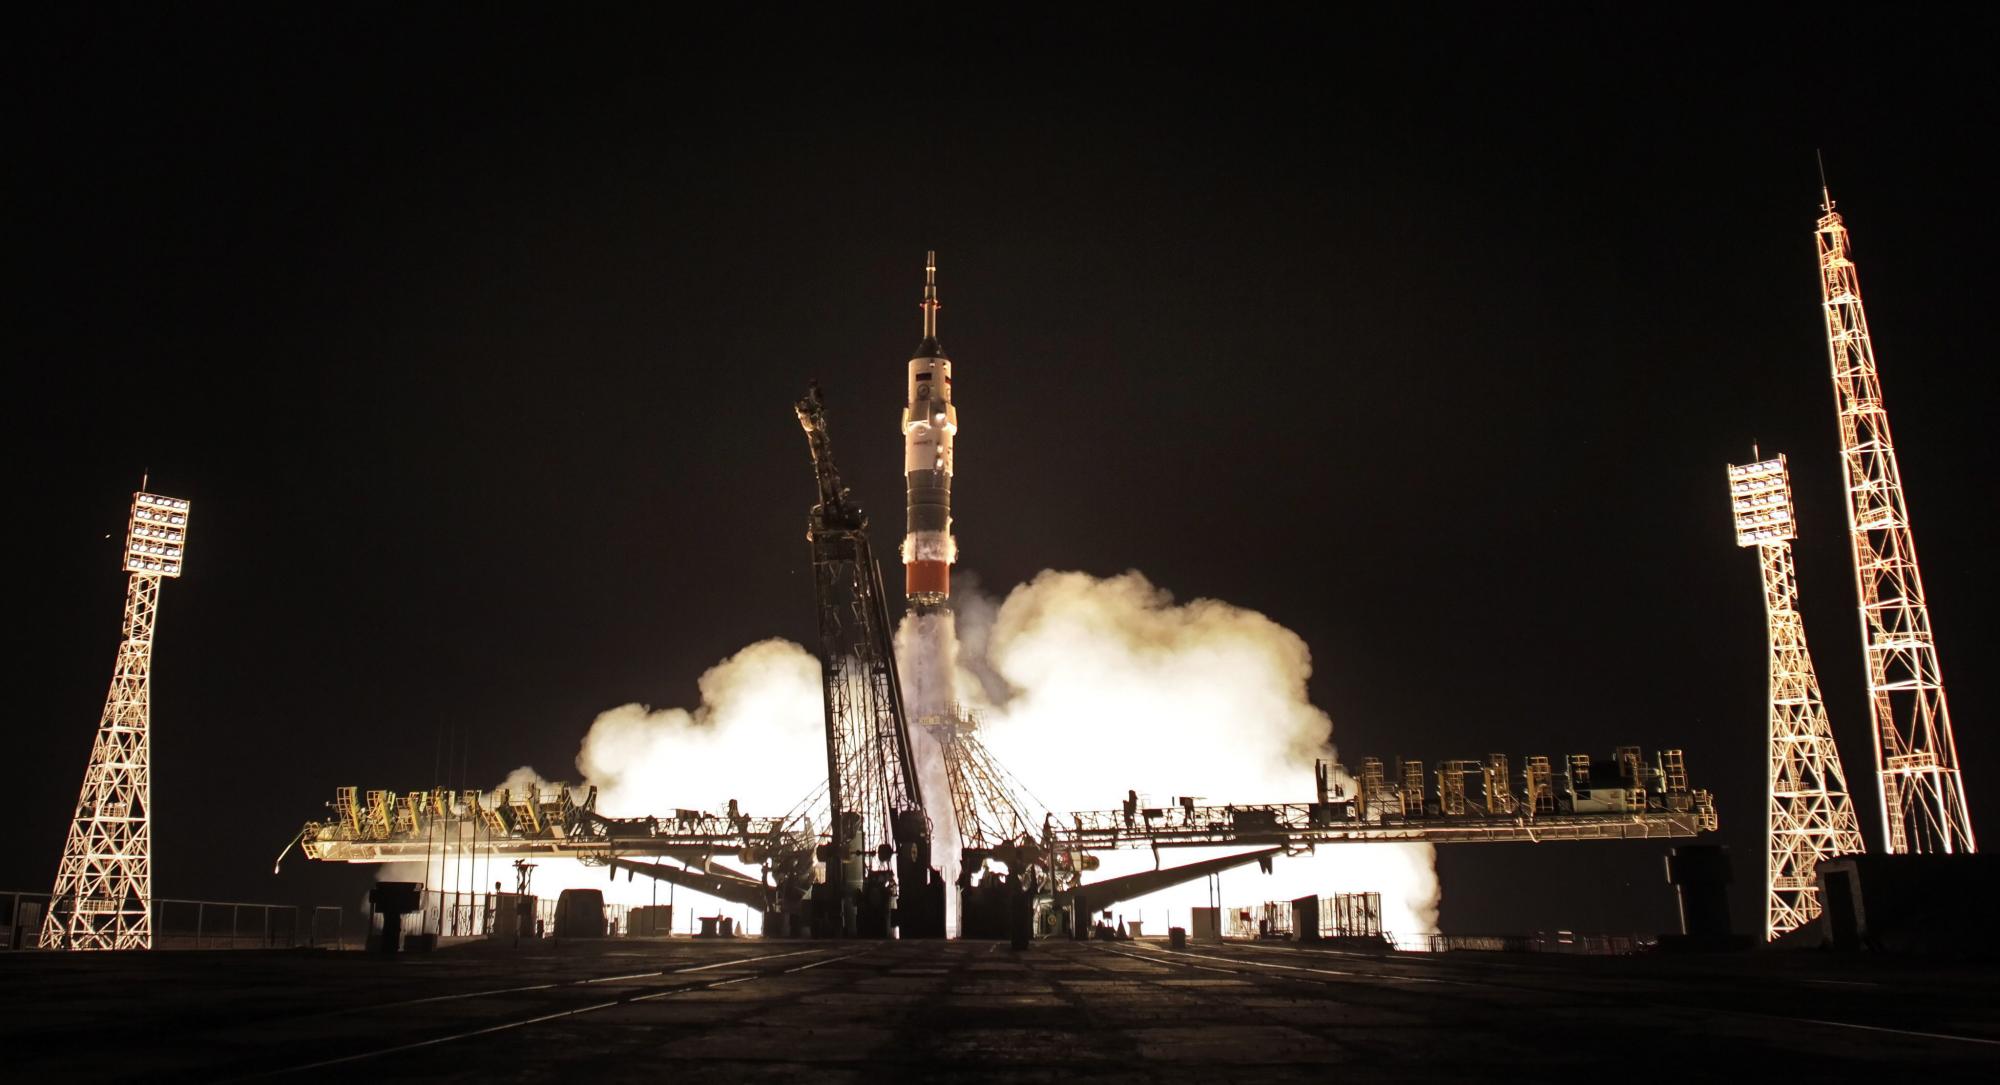 El cohete Soyuz TMA-17M es visto hoy, miércoles 22 de julio de 2015, durante el despegue de la expedición de la NASA 44/45 con el astronauta Kjell Lindgren, el astronauta japonés Kimiya Yui y el cosmonauta ruso Oleg Kononenko ka Estación Especial Internacional en en Baikonur (Kazajistán).